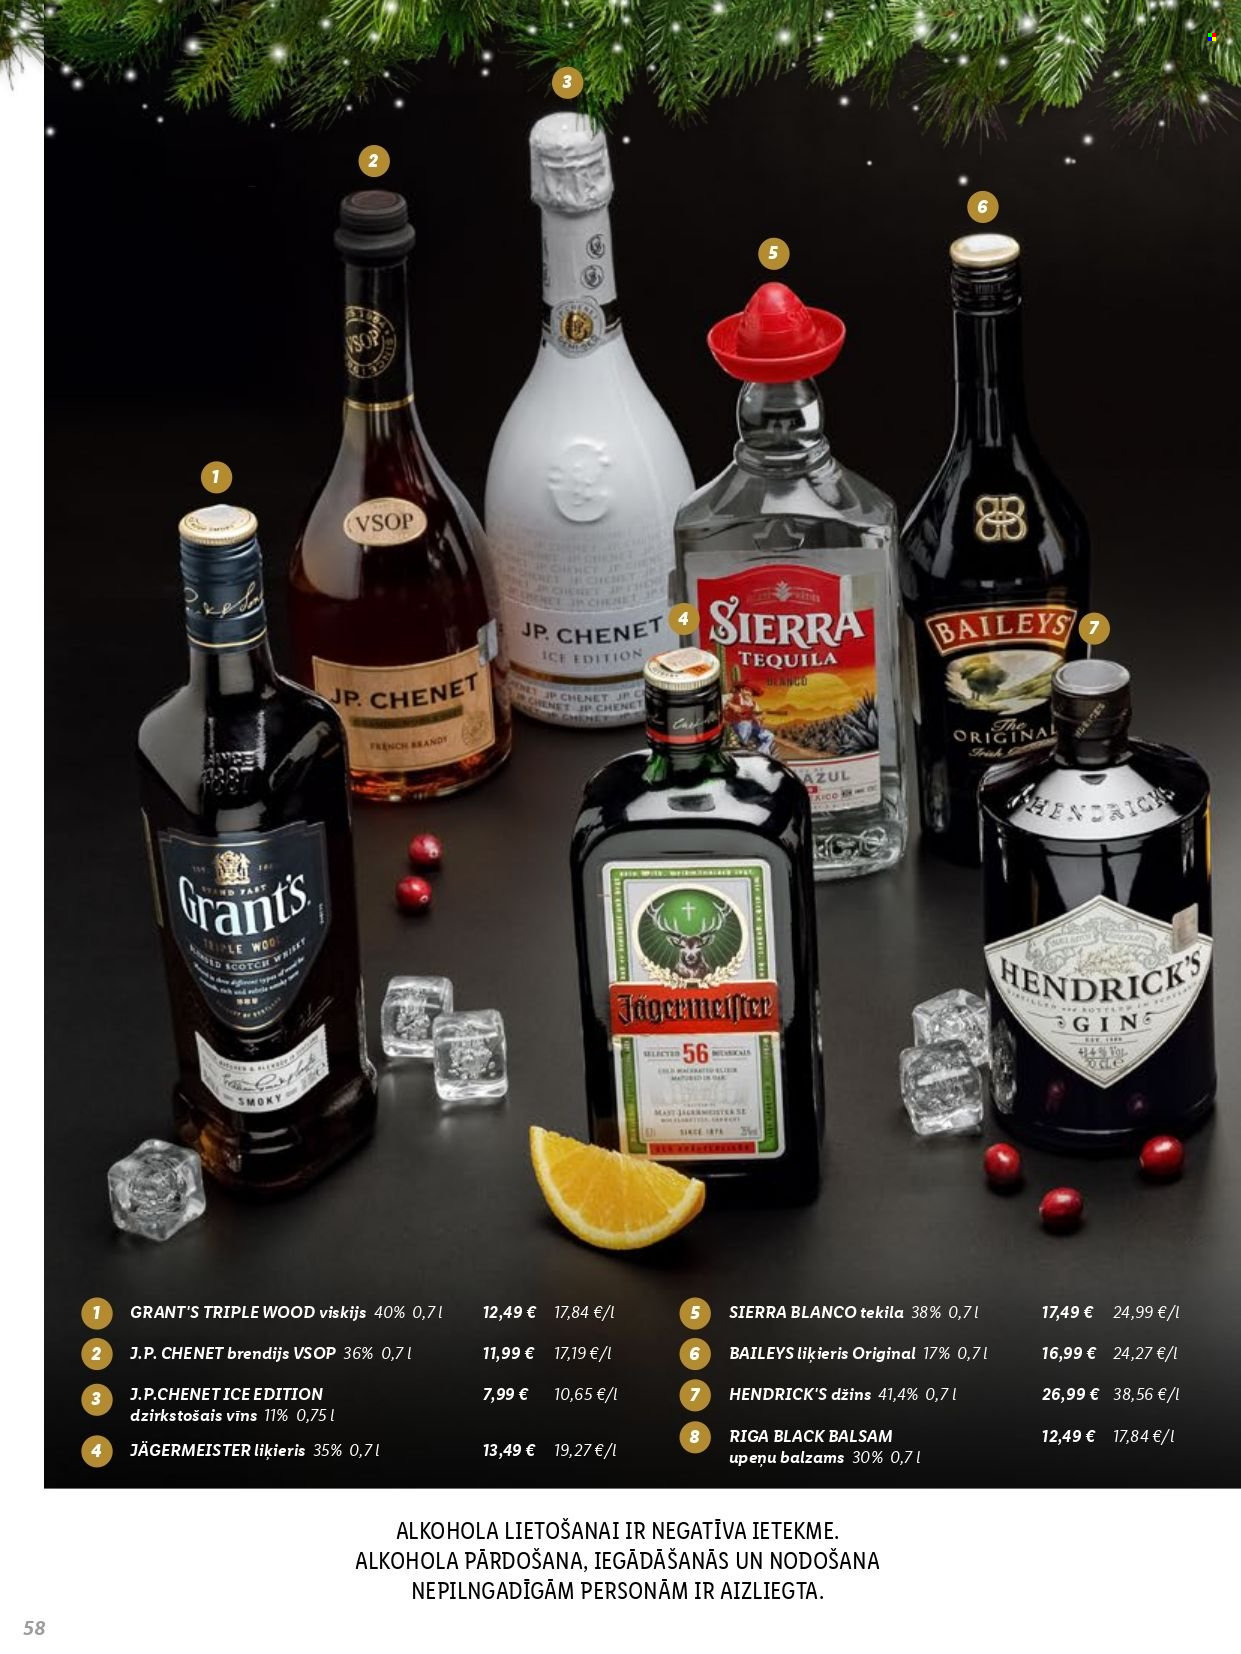 thumbnail - Lidl buklets - Akcijas preces - dzirkstošais vīns, J.P. Chenet, brandy, džins, Grant’s, Hendrick’s, Jägermeister, liķieris, brendijs, balzams, tekila, tequila, vīns, viskijs, whisky. 58. lapa.